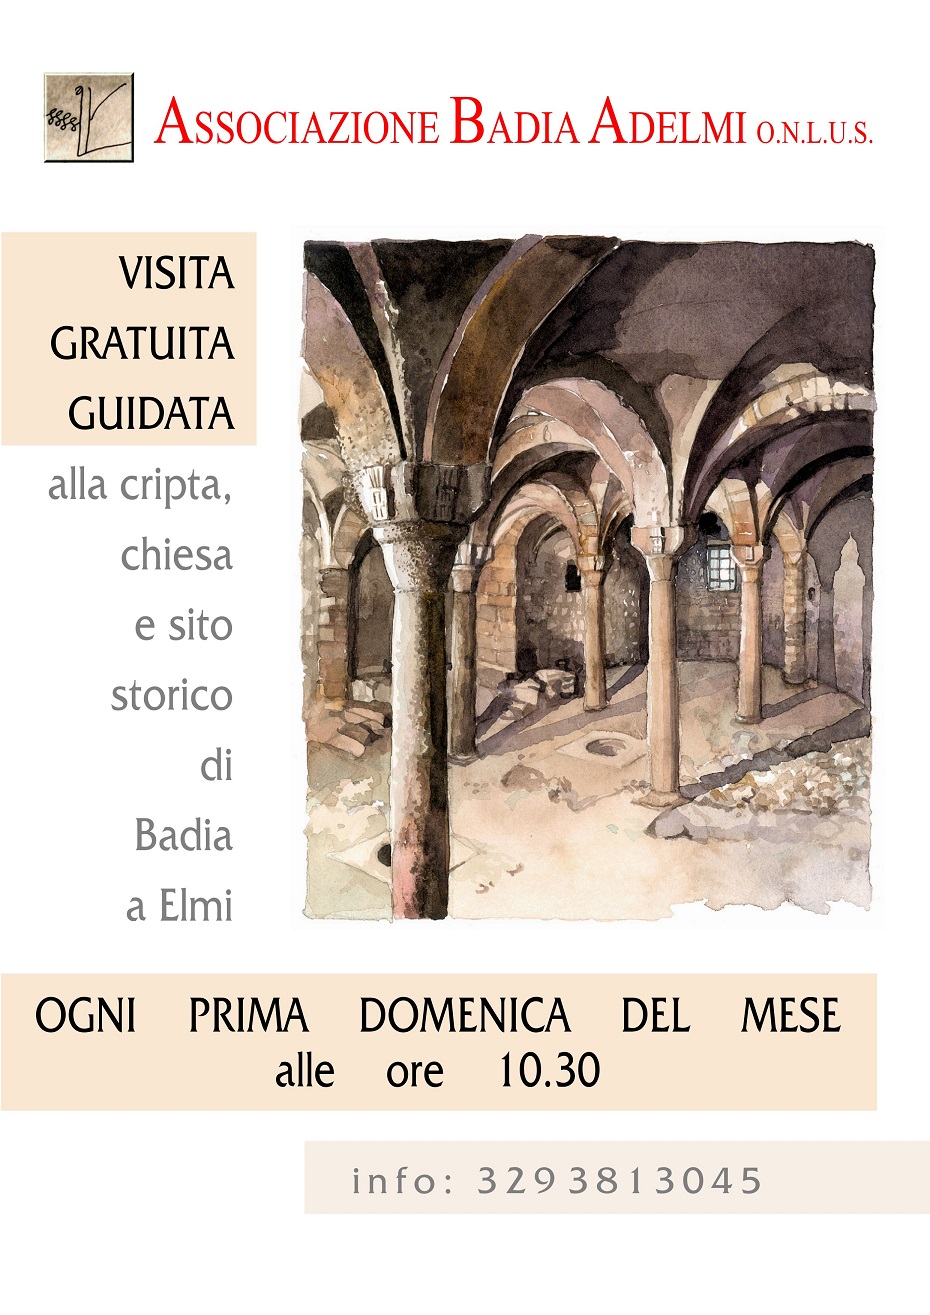 Guided tour of Badia a Elmi Roman Crypt